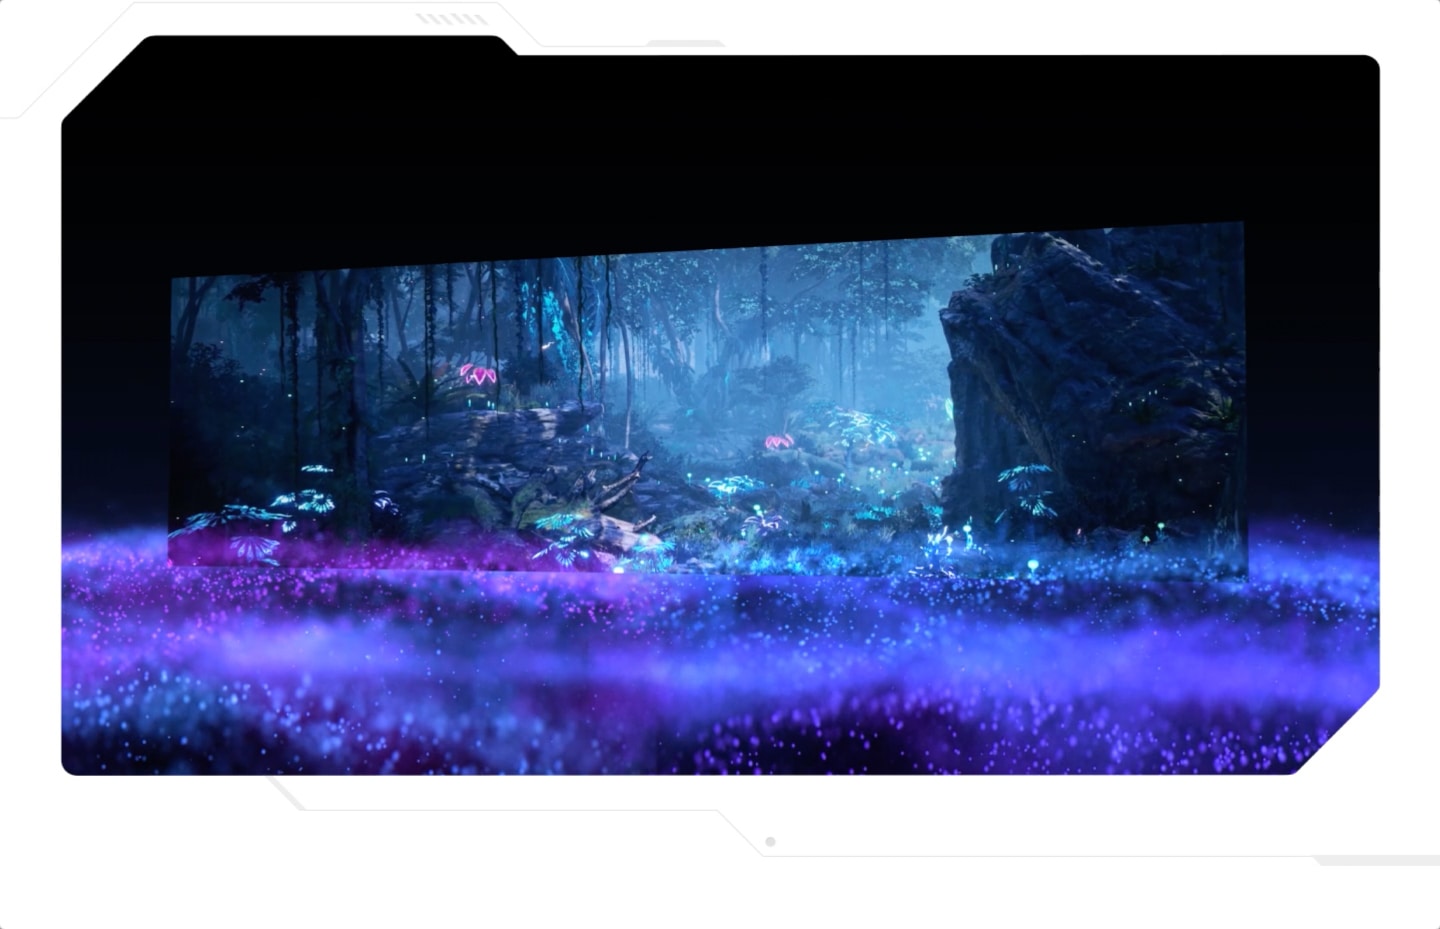 Samsung Neo Quantum Processor Pro xuất hiện với nhãn vi xử lý hình vuông ở giữa. Và chuyển tiếp hiển thị qua cảnh ban đêm trong rừng trên màn hình, rồi phóng nhỏ ra khu rừng mù sương với cây bao quanh. Màn hình bị nghiêng về bên trái.